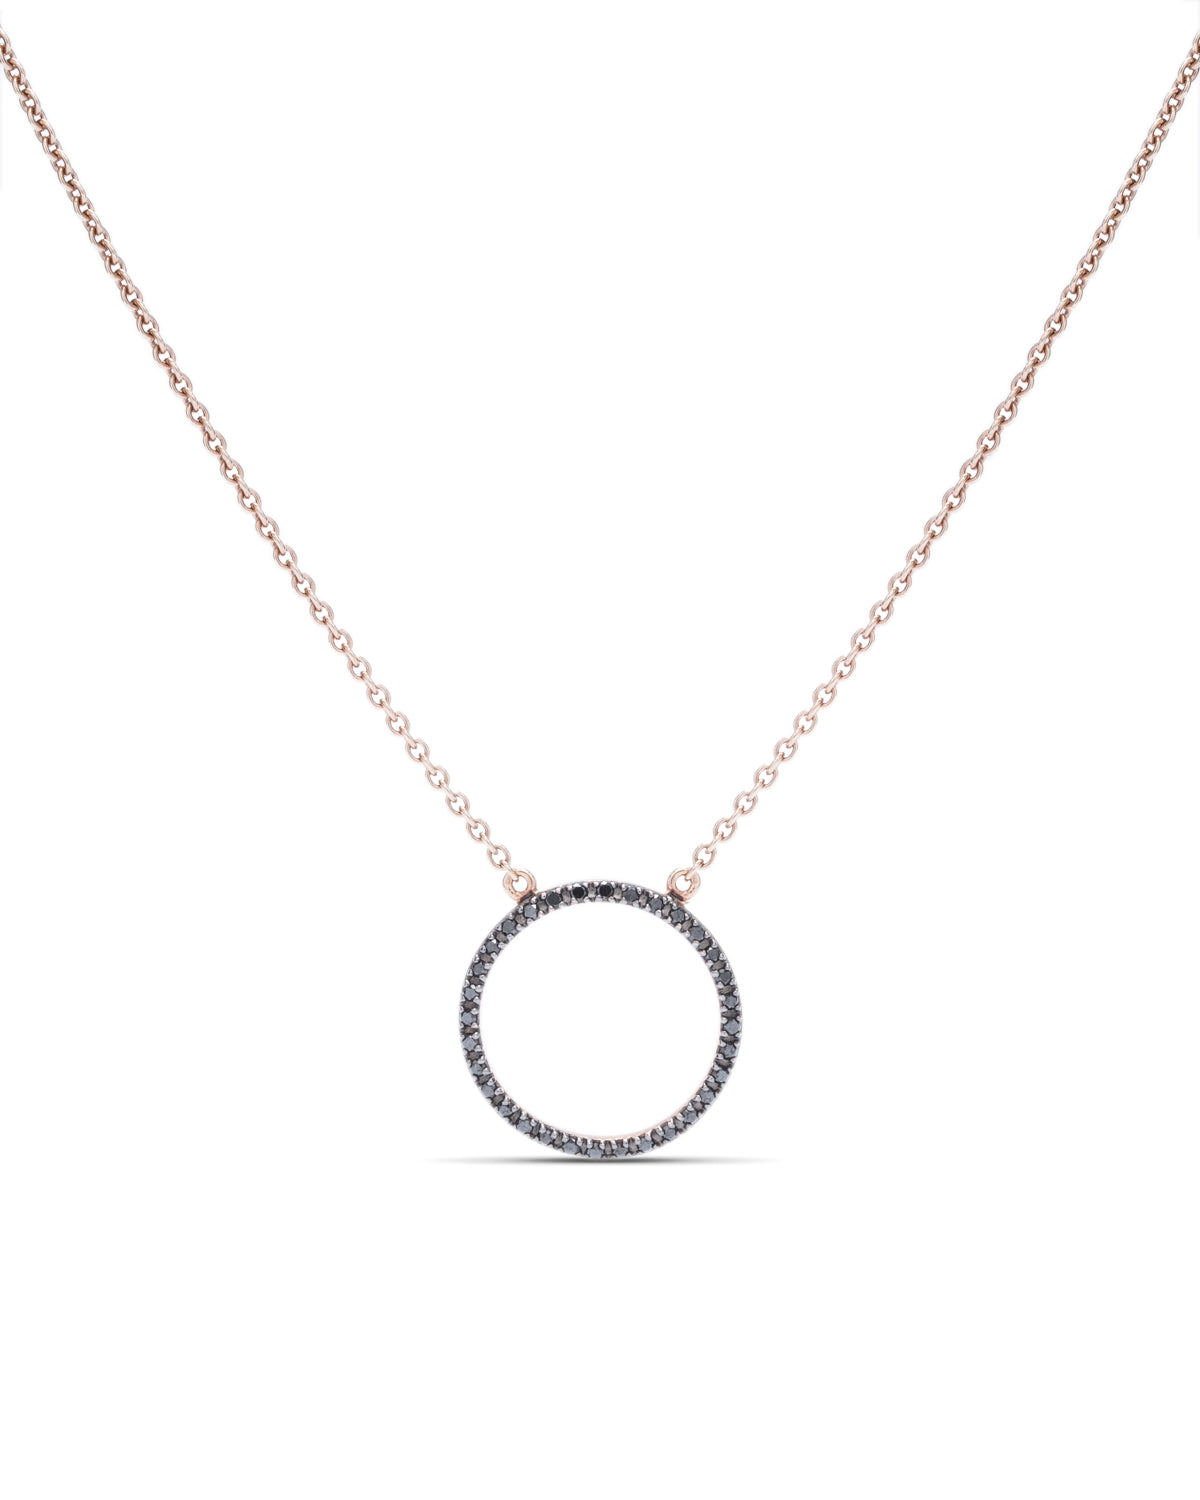 Black Diamond Circle Pendant - Charles Koll Jewellers